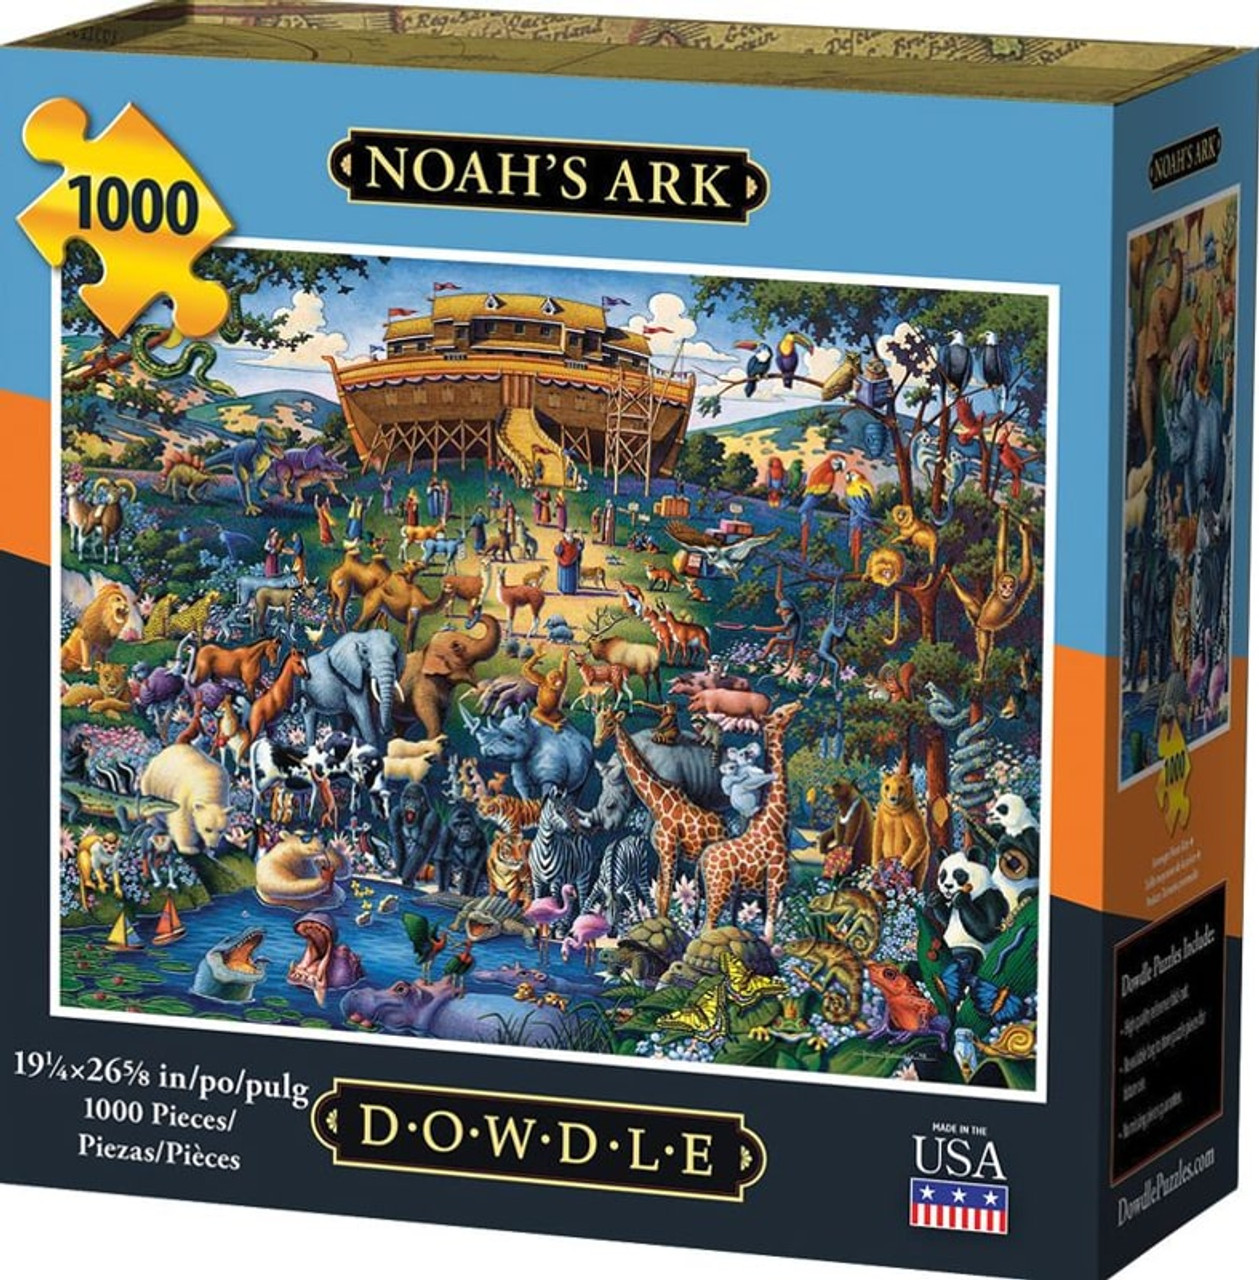 World Piece Dowdle Jigsaw Puzzles - 1000 Piece Dowdle Jigsaw Puzzle